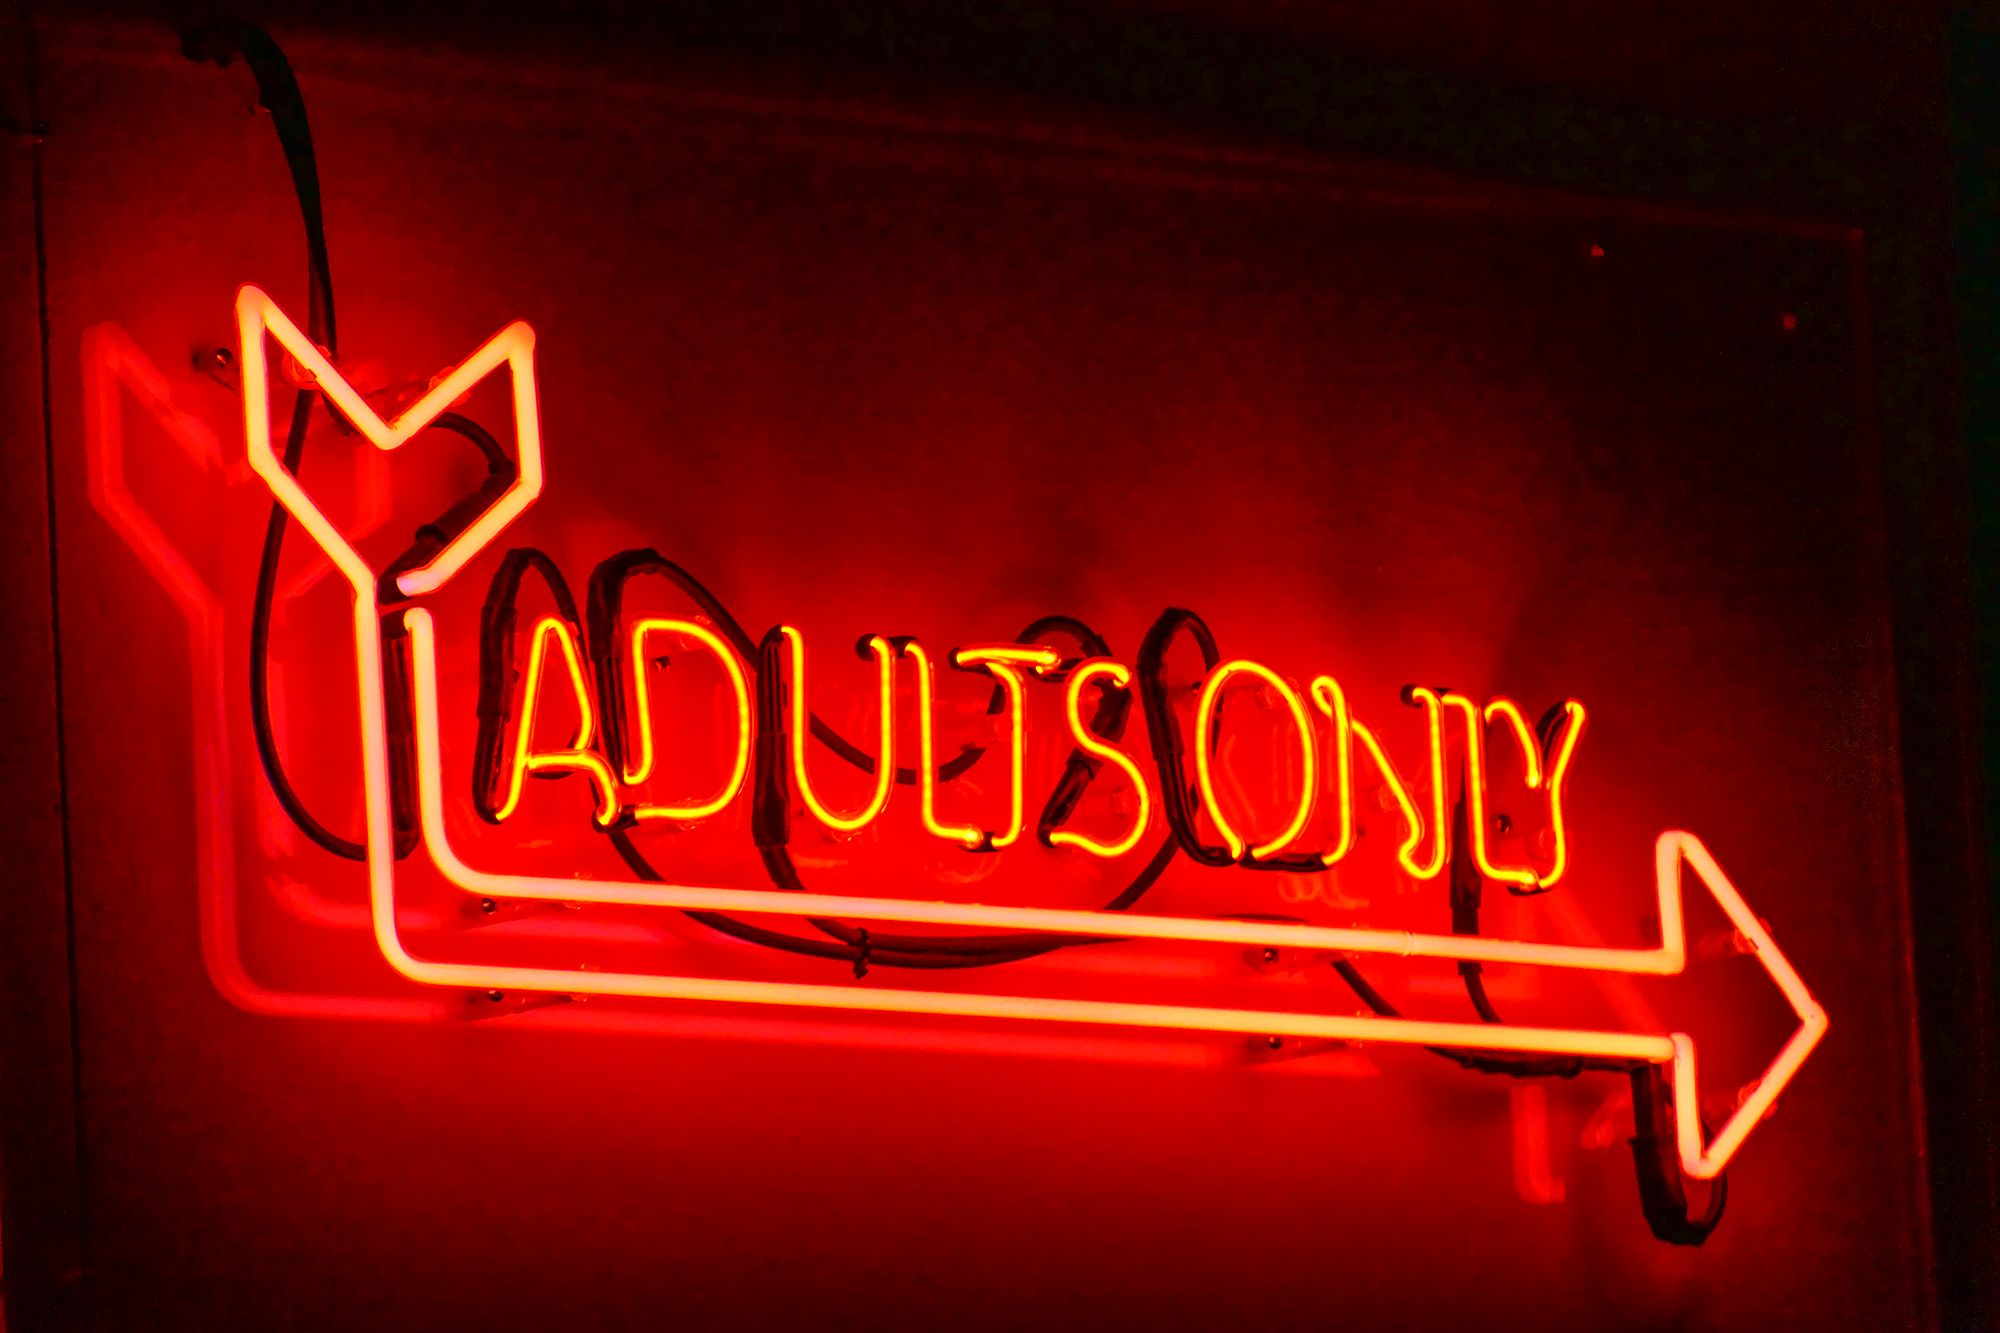 Rotes Leuchtschild mit der Aufschrift "Adults Only" und einem Pfeil darunter, welches an der Wand montiert ist